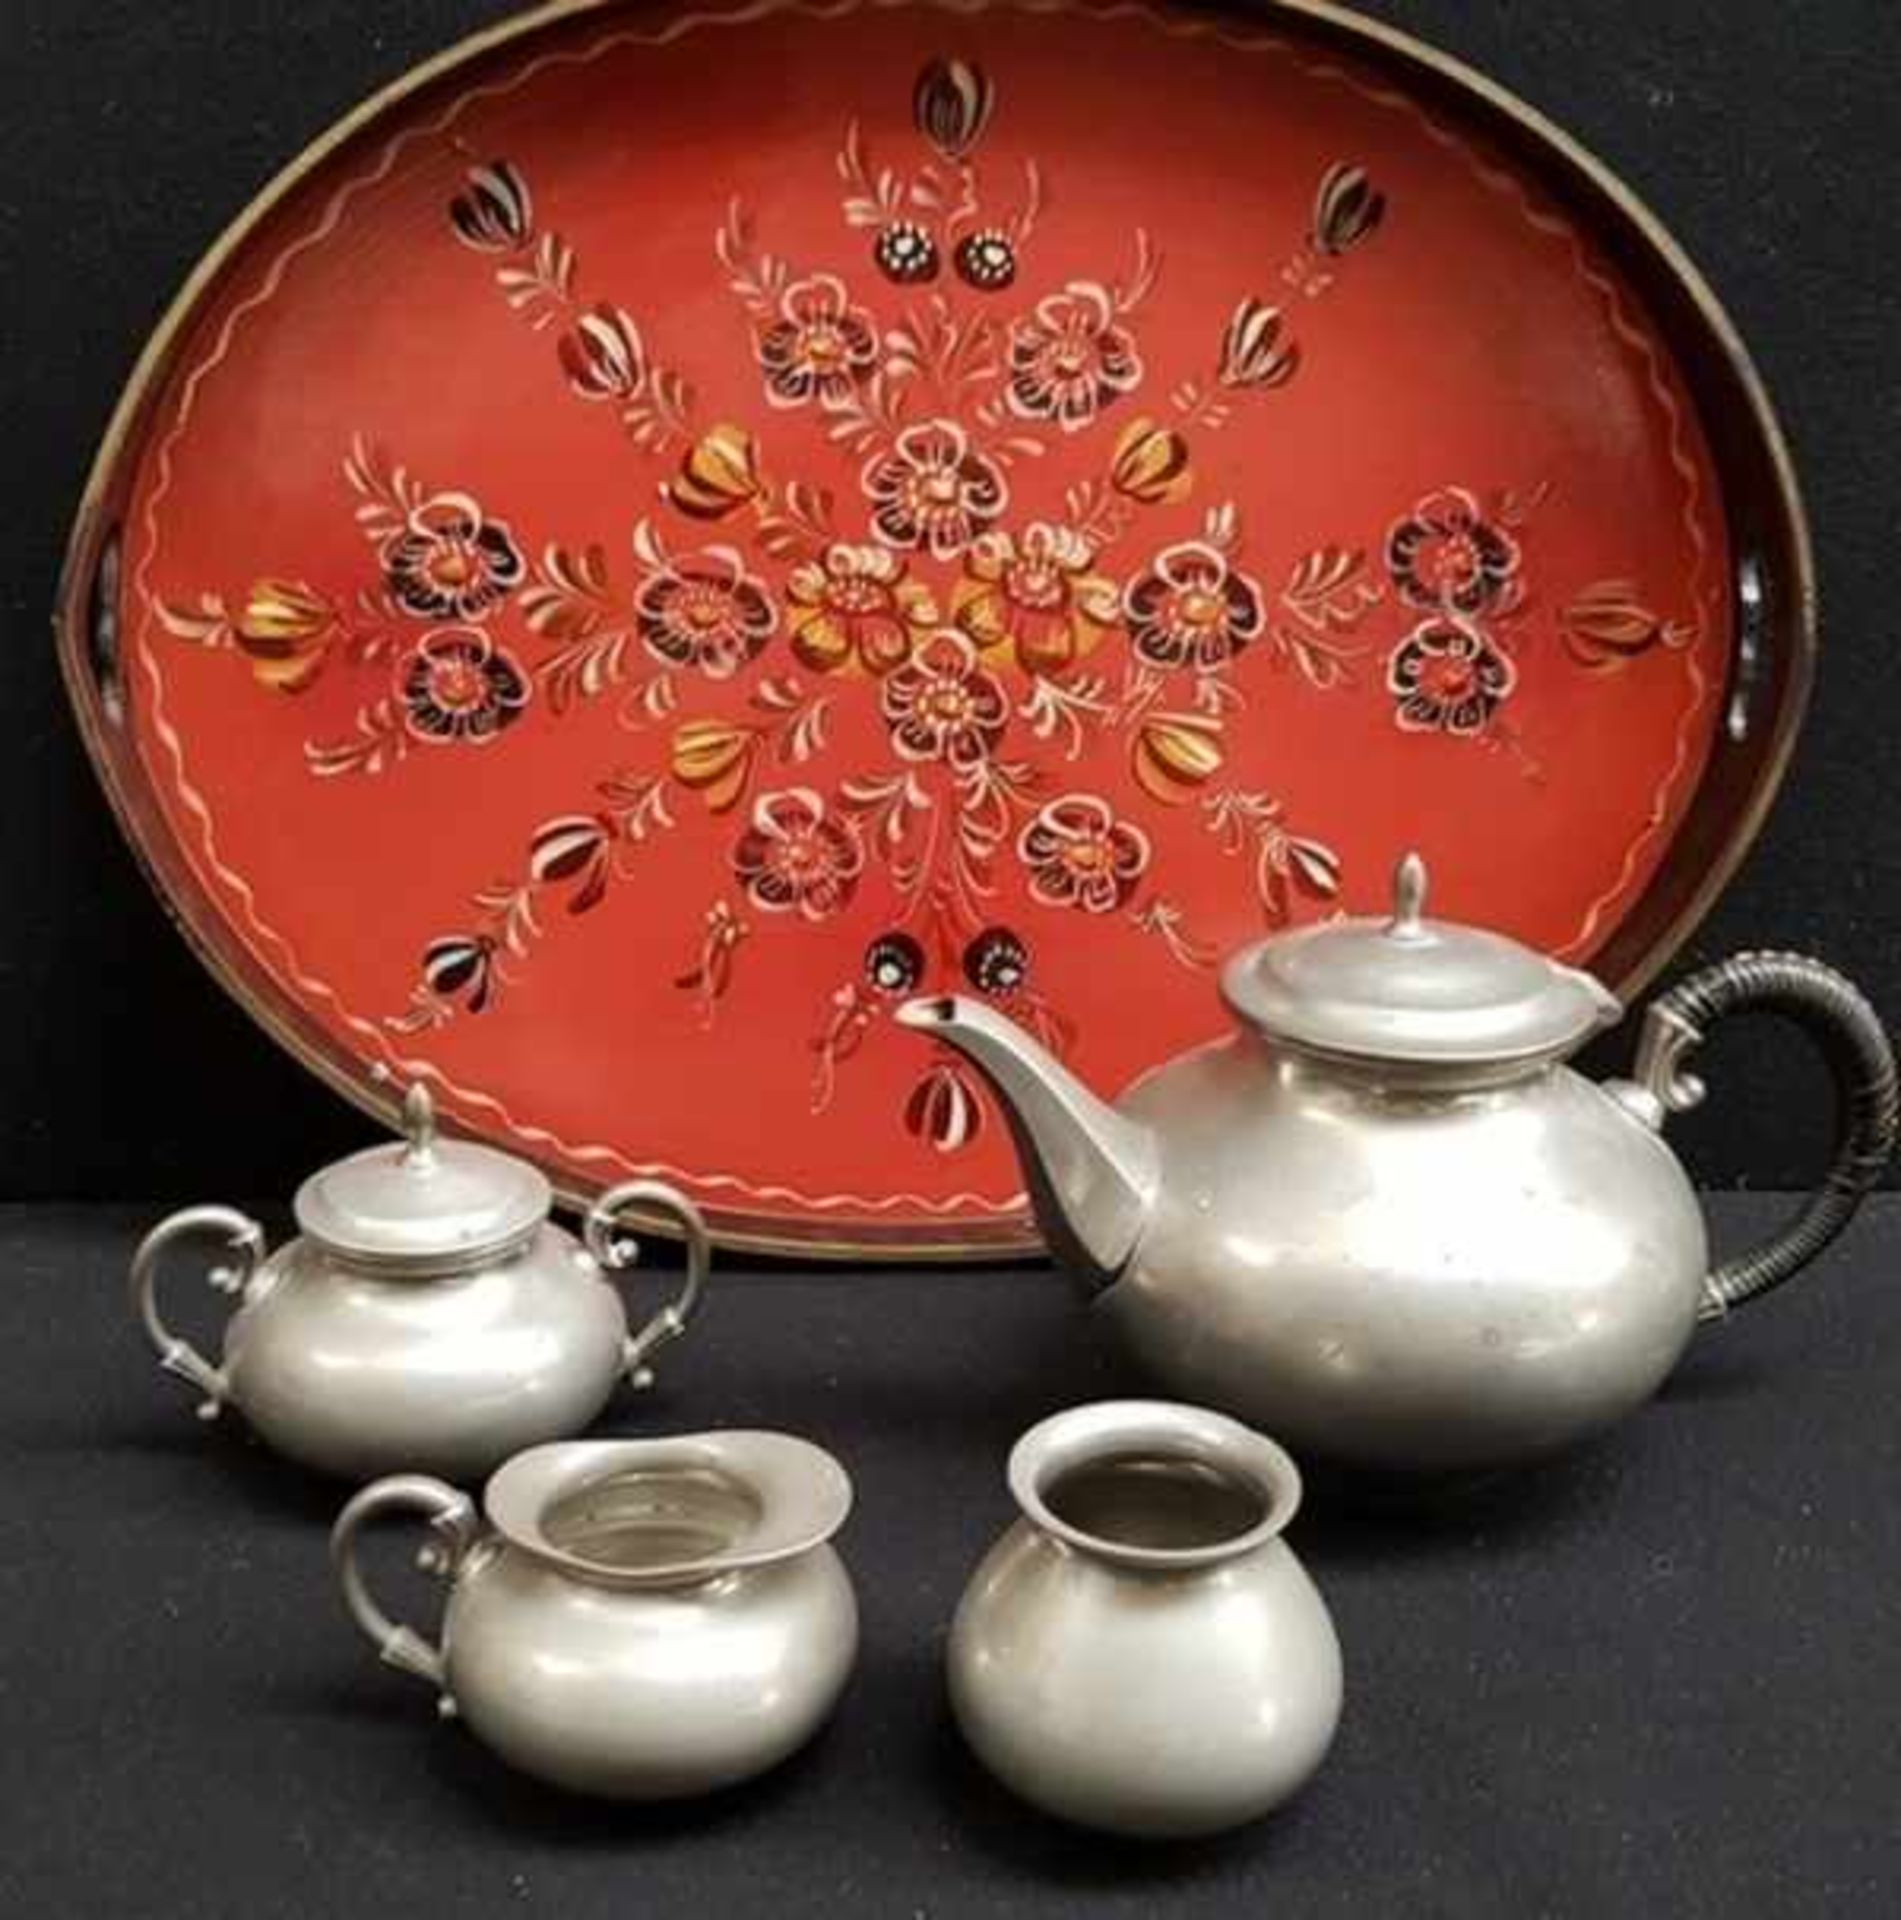 (Curiosa) Metawa tinnen thee servies op Hindeloopen dienblad, eerste helft 20e eeuwTinnen thee